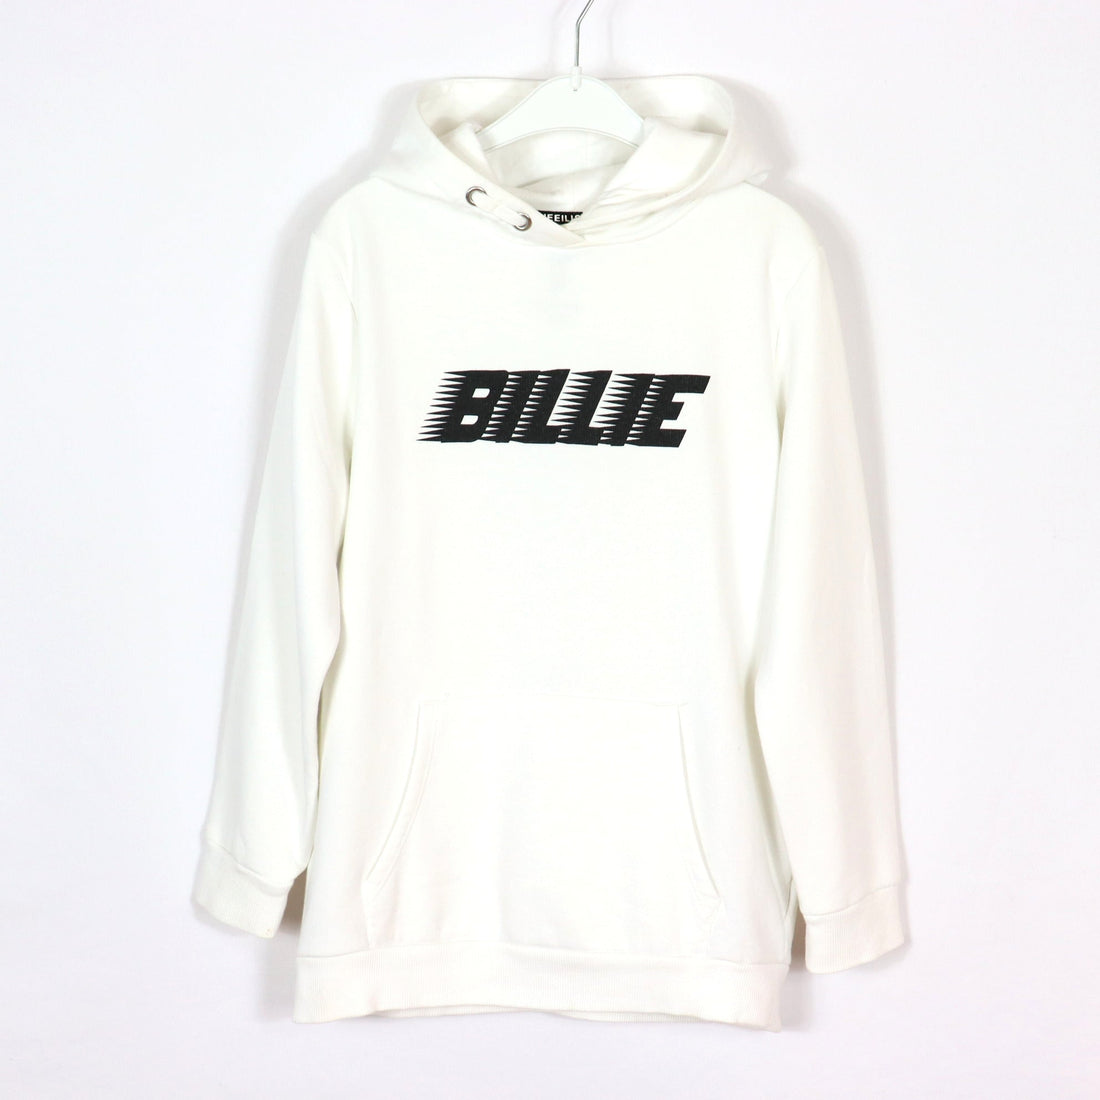 Pullover - Billie Eilish - Hoody - H&M Kollektion 2020 - 134/140 - weiß - Schrift - Girl